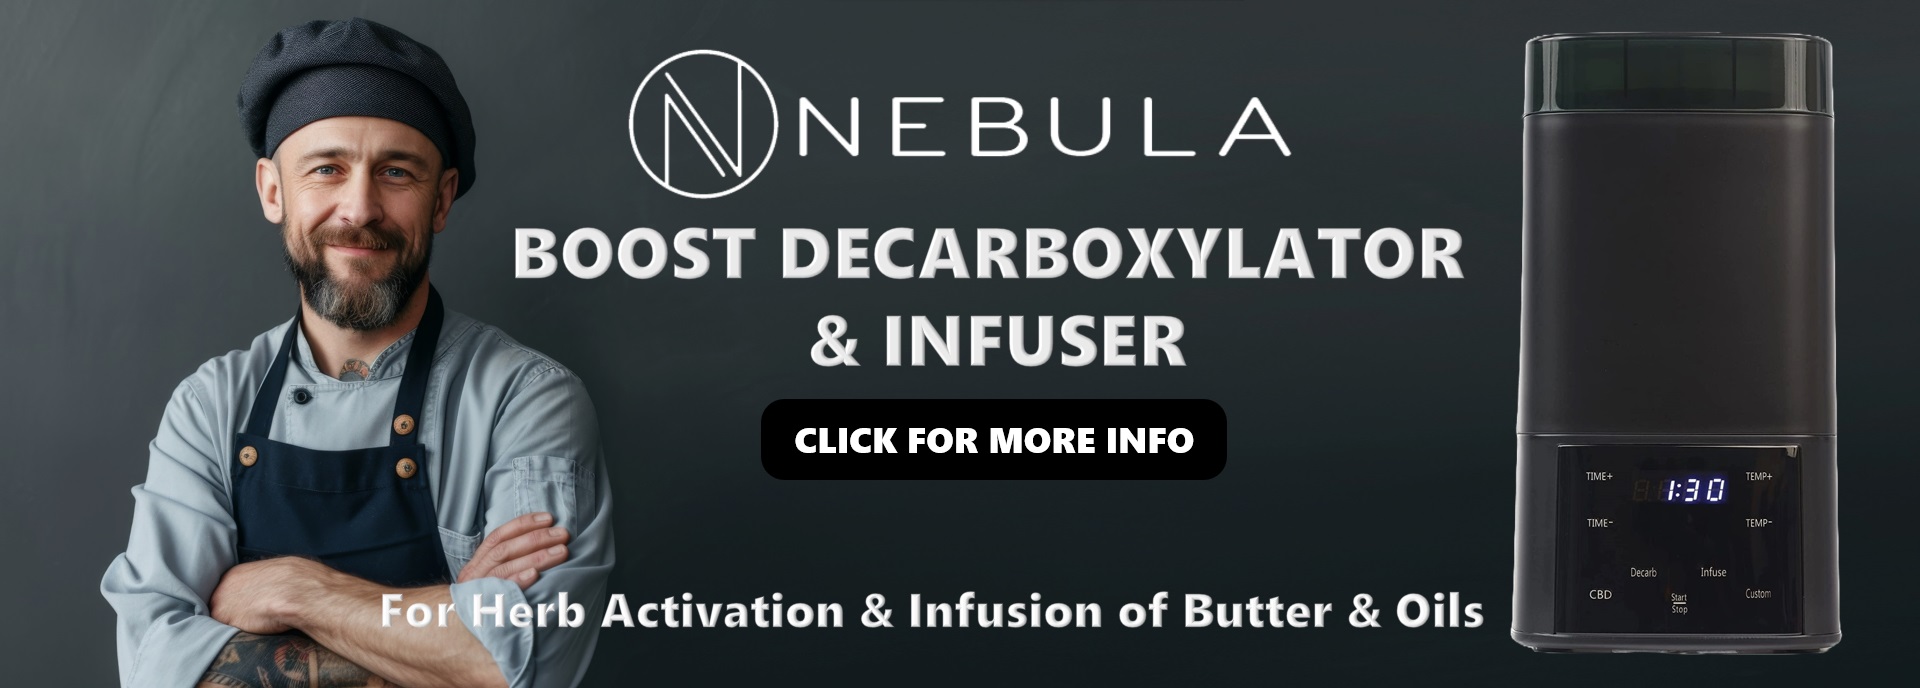 Nebula Boost decarboxylator